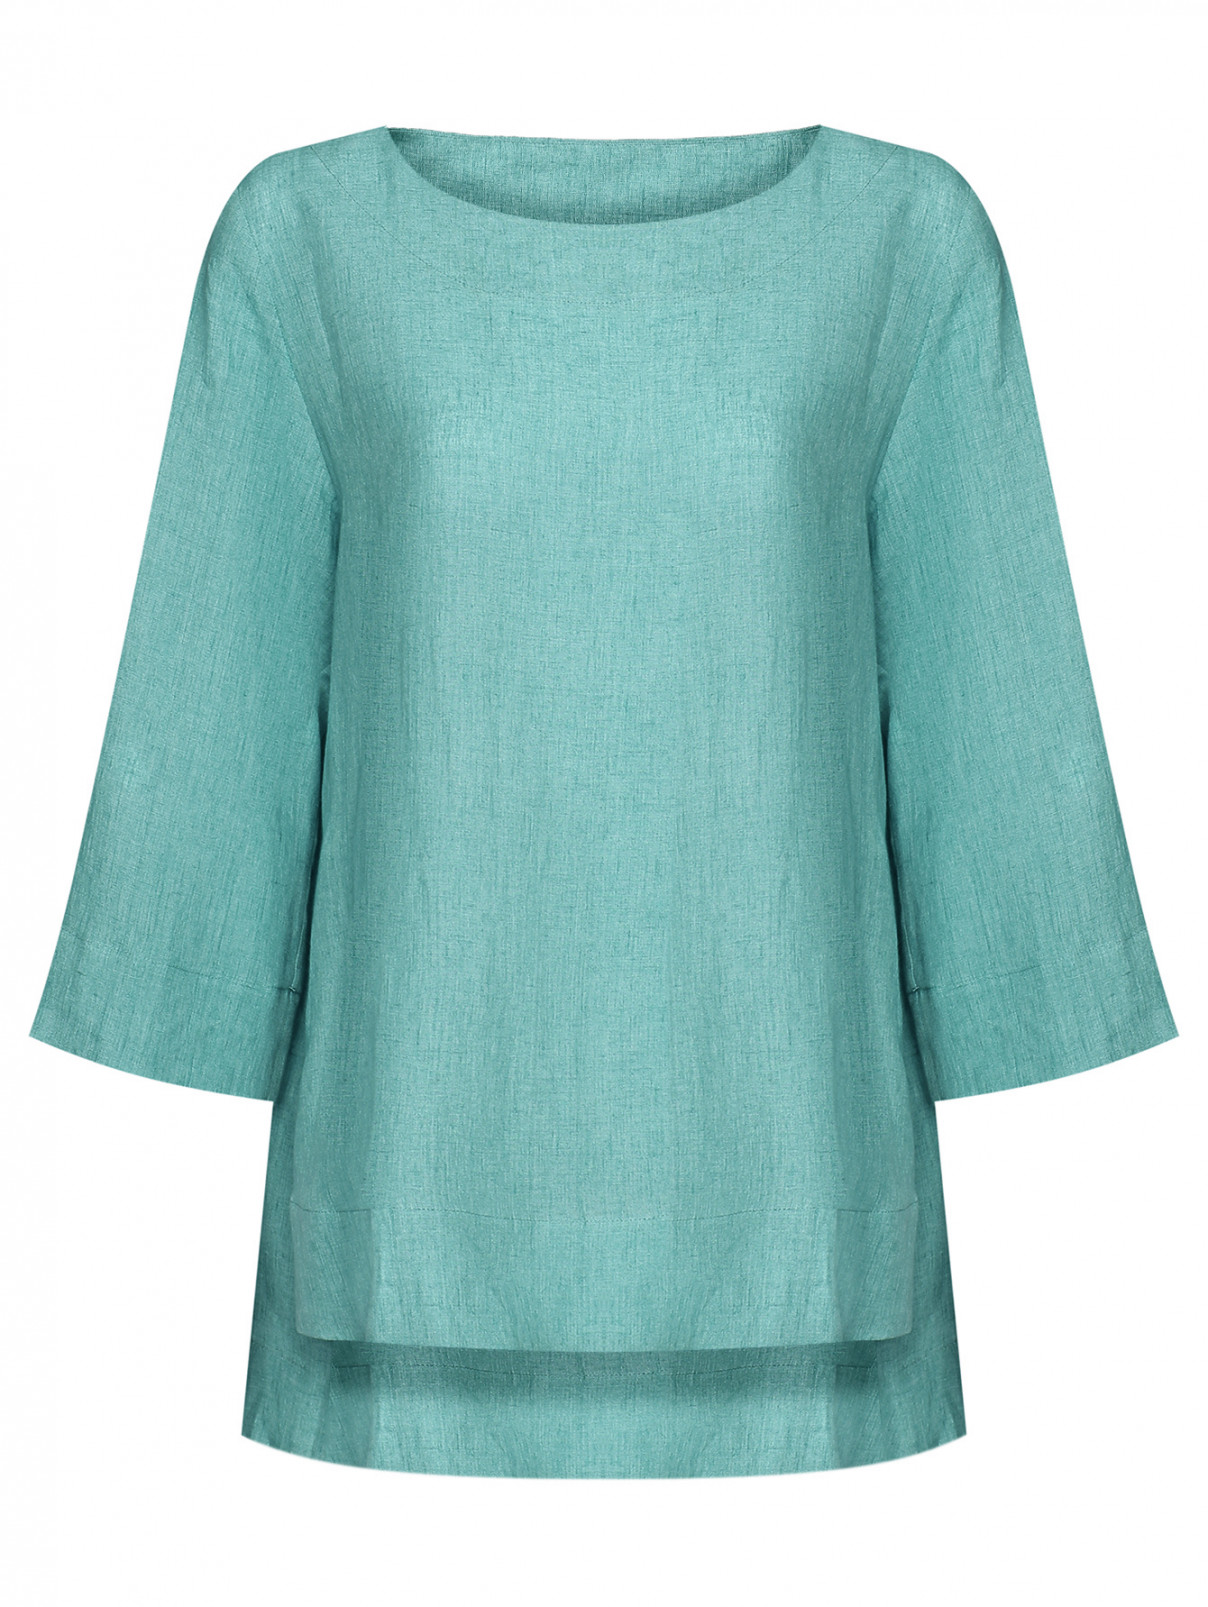 Блуза из льна с разрезами Marina Rinaldi  –  Общий вид  – Цвет:  Зеленый